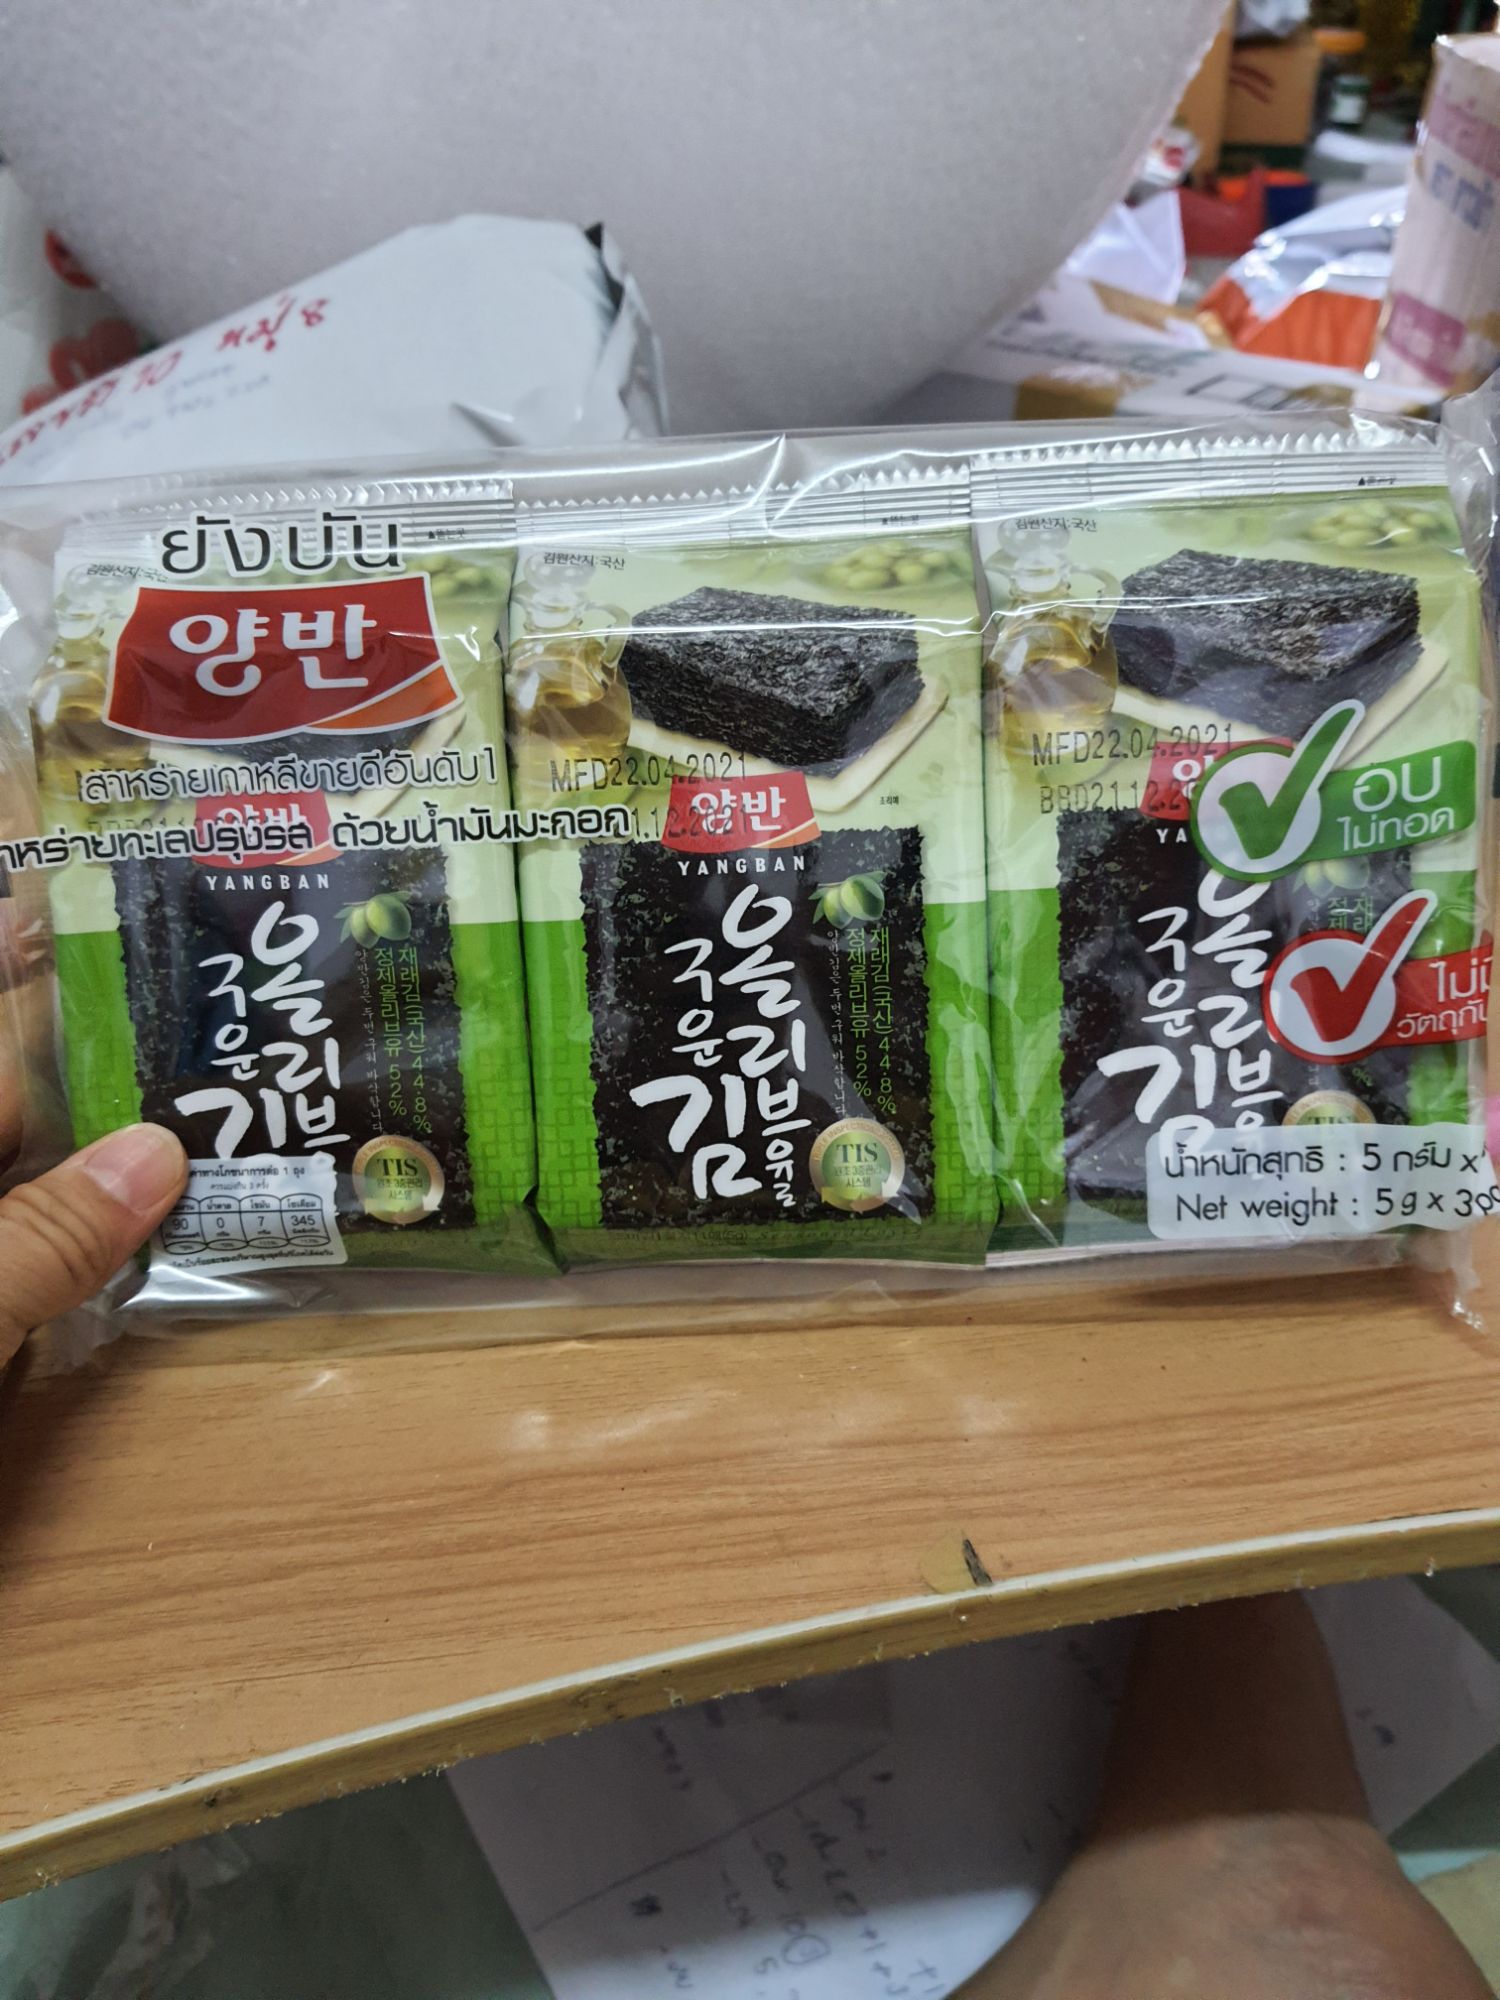 สาหร่ายเกาหลี สาหร่ายทะเล อบกรอบ อบไม่ทอด !! อร่อย สินค้าขายดีอันดับ 1 ของ เกาหลี ยี่ห้อยังบัน Yangb